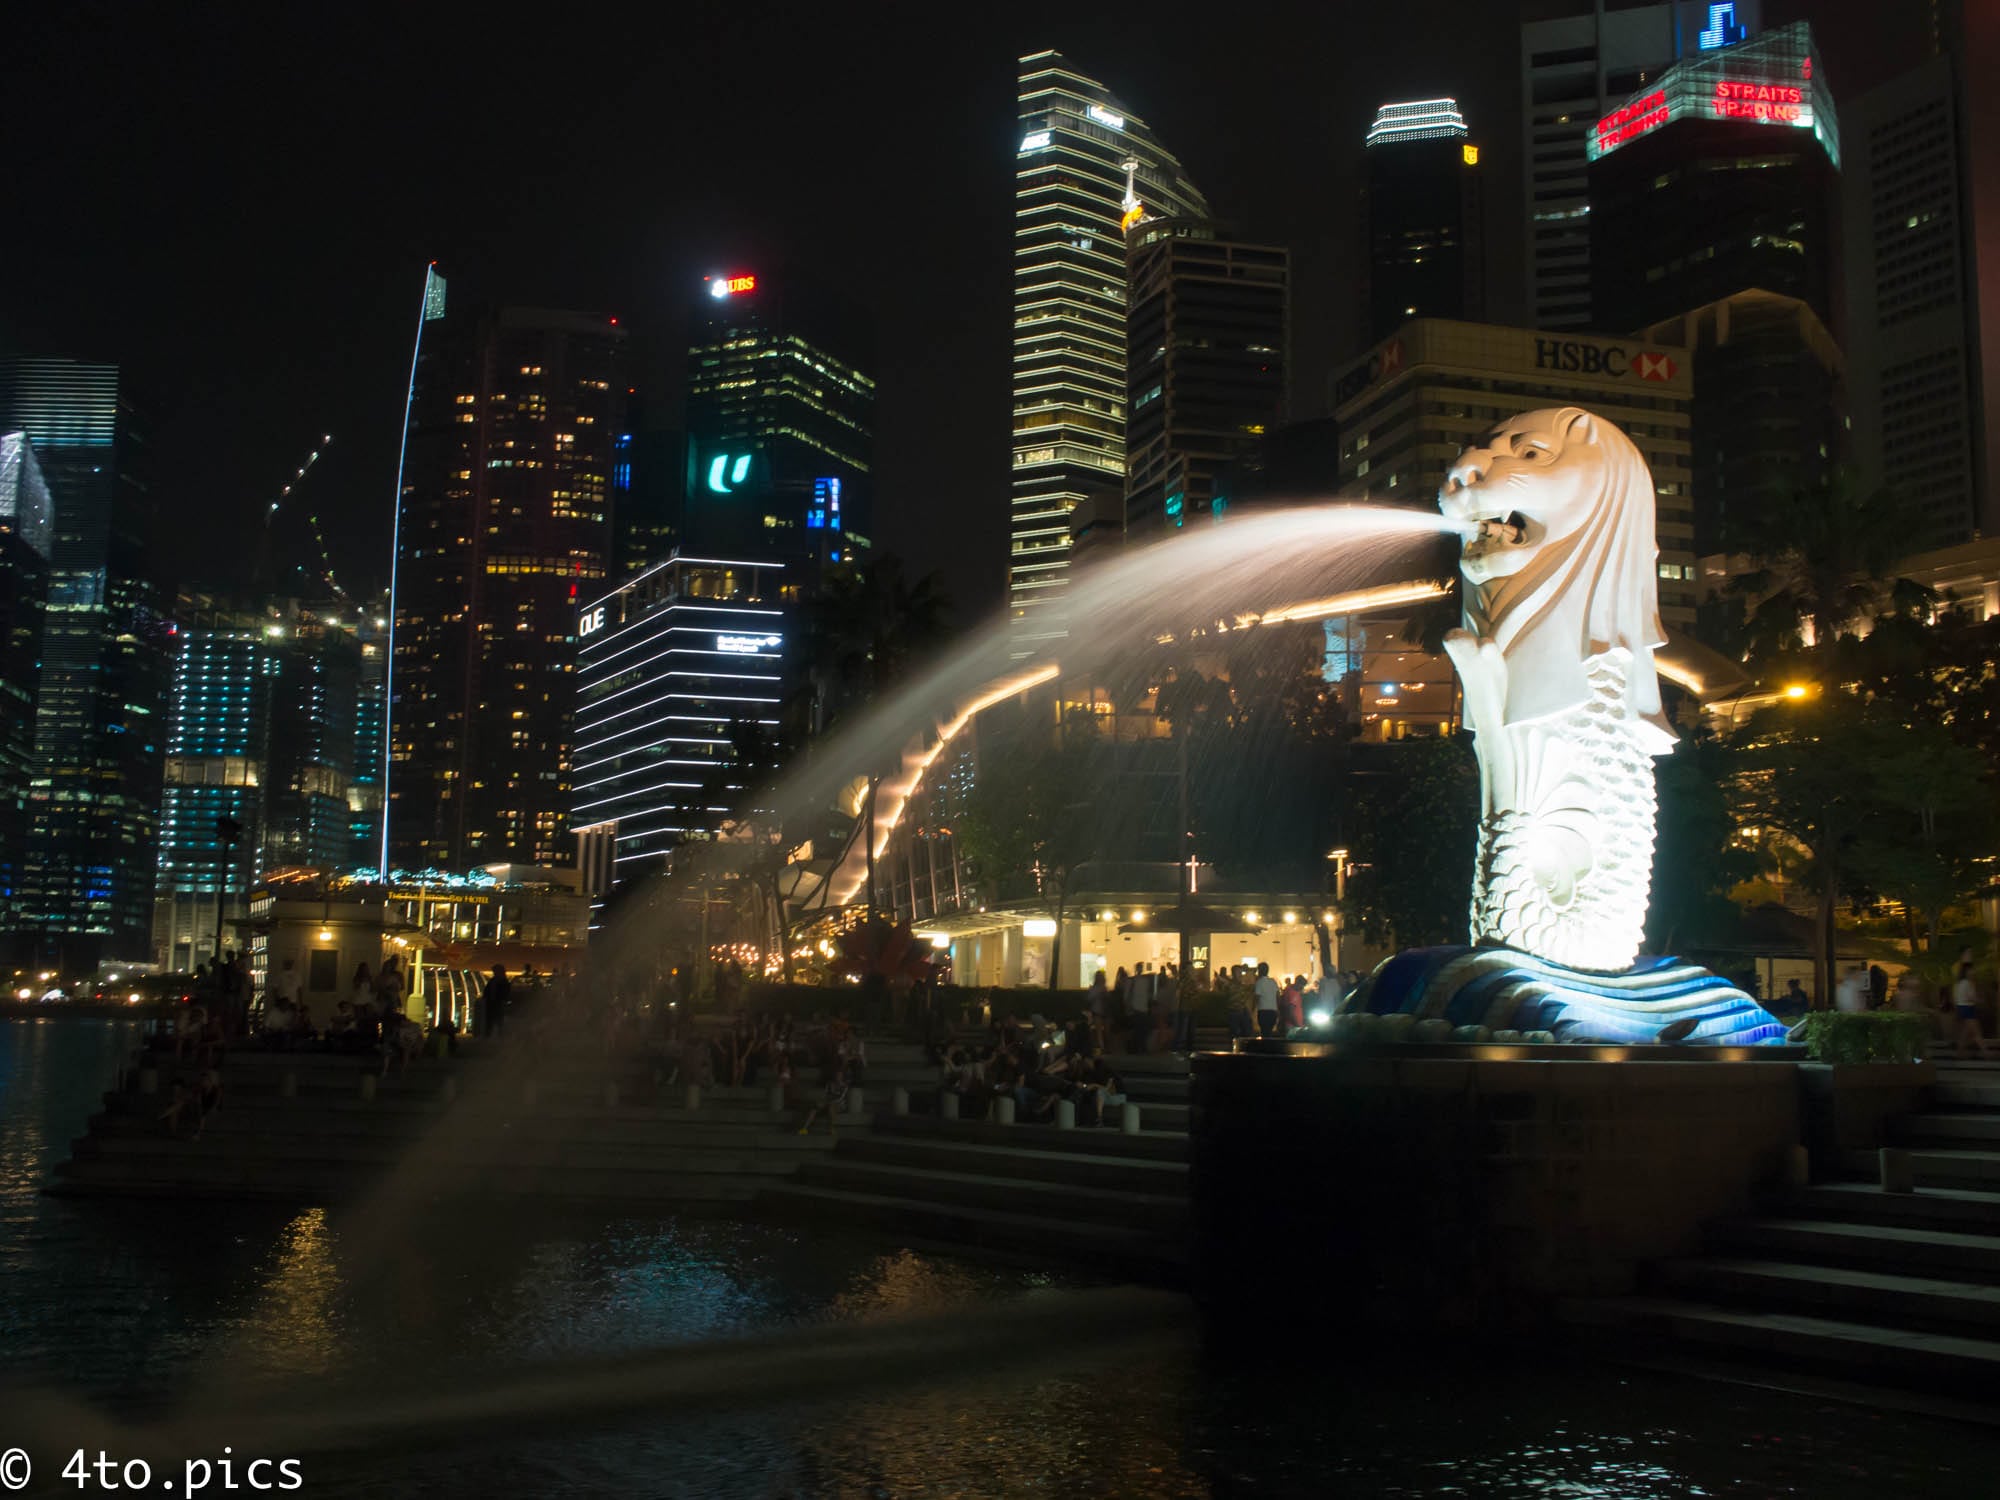 [シンガポール]夜のマーライオン…ライトアップされてますます際立つ存在感。